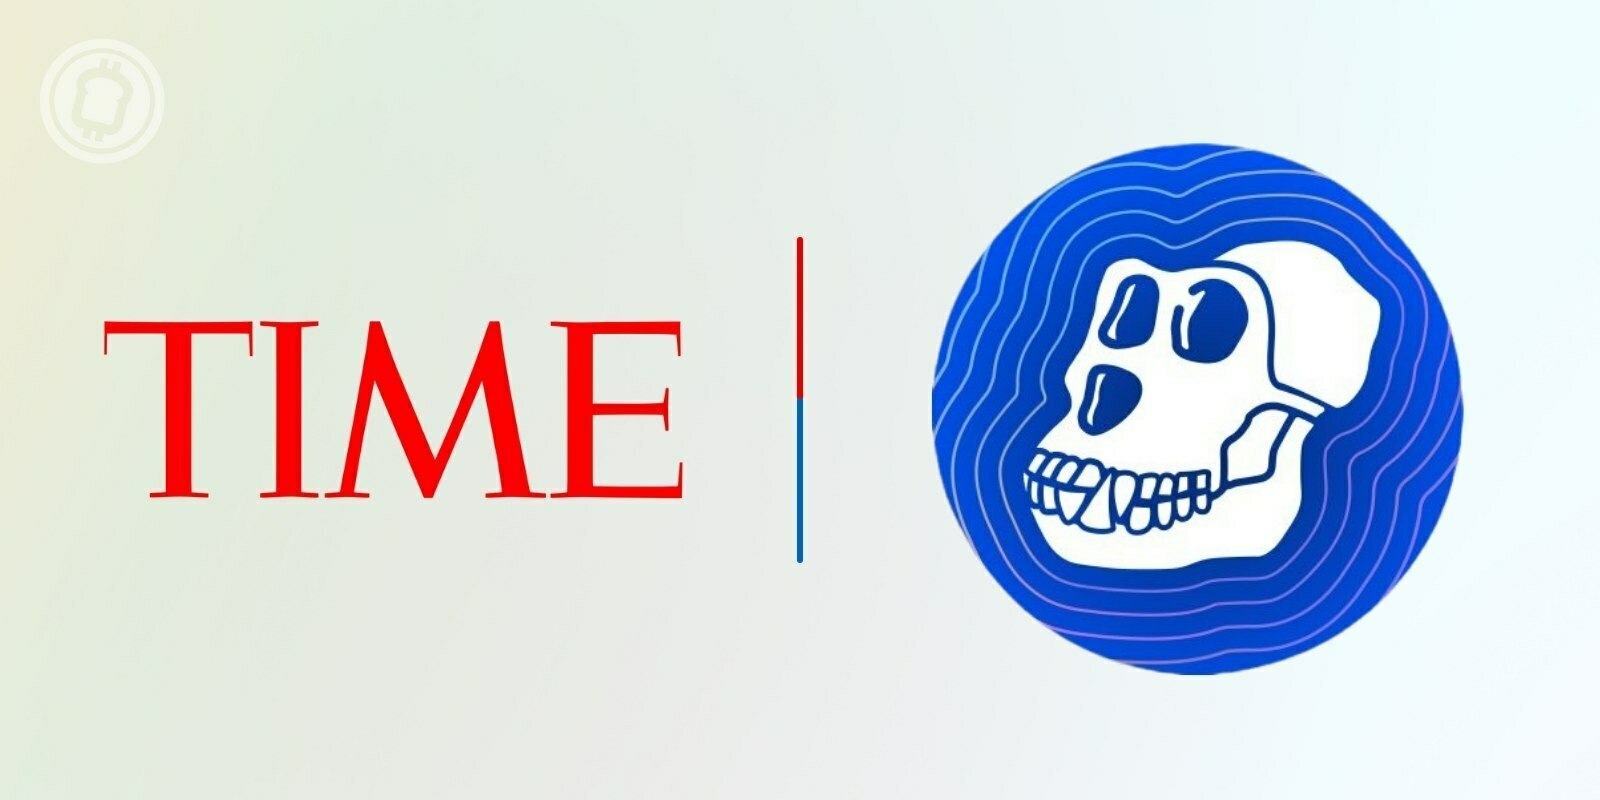 Le Time Magazine prévoit d'accepter l'ApeCoin (APE) pour ses abonnements numériques